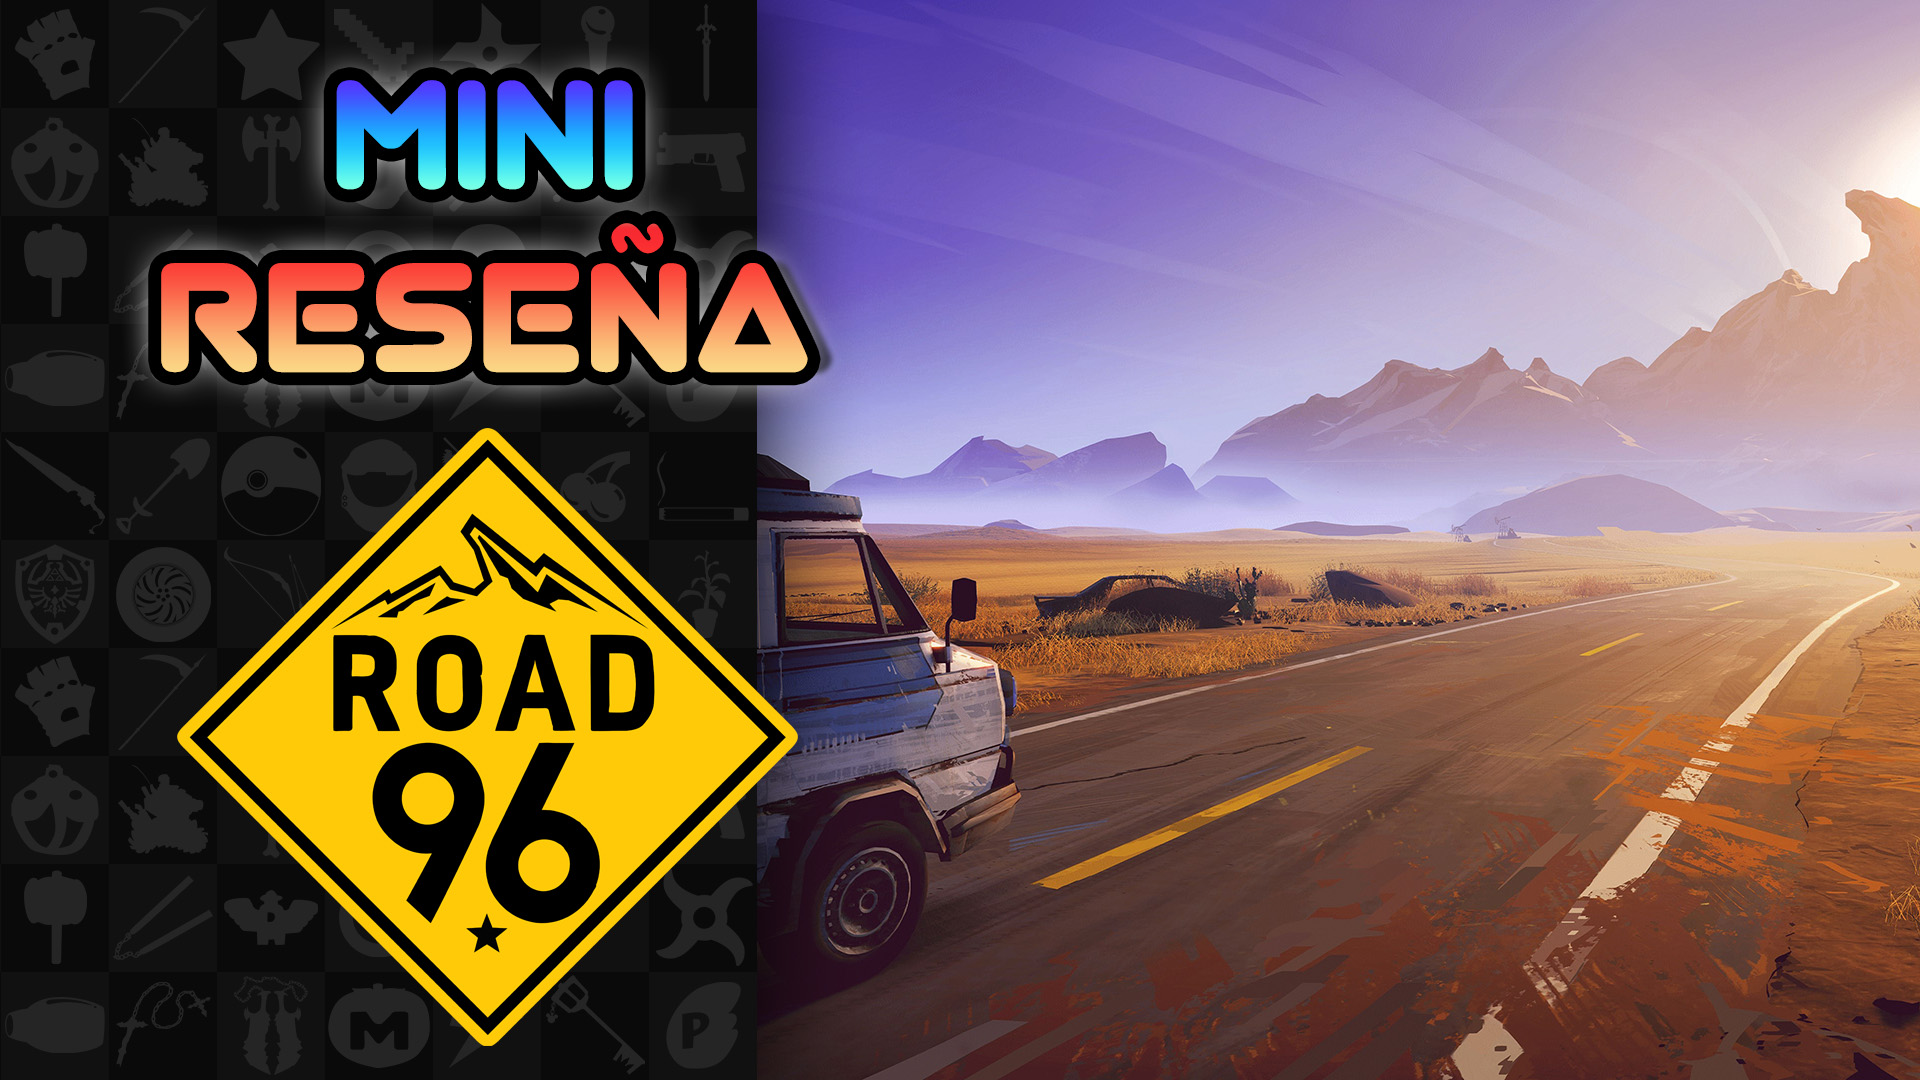 Mini Reseña Road 96 – Un divertido y escalofriante viaje por carretera